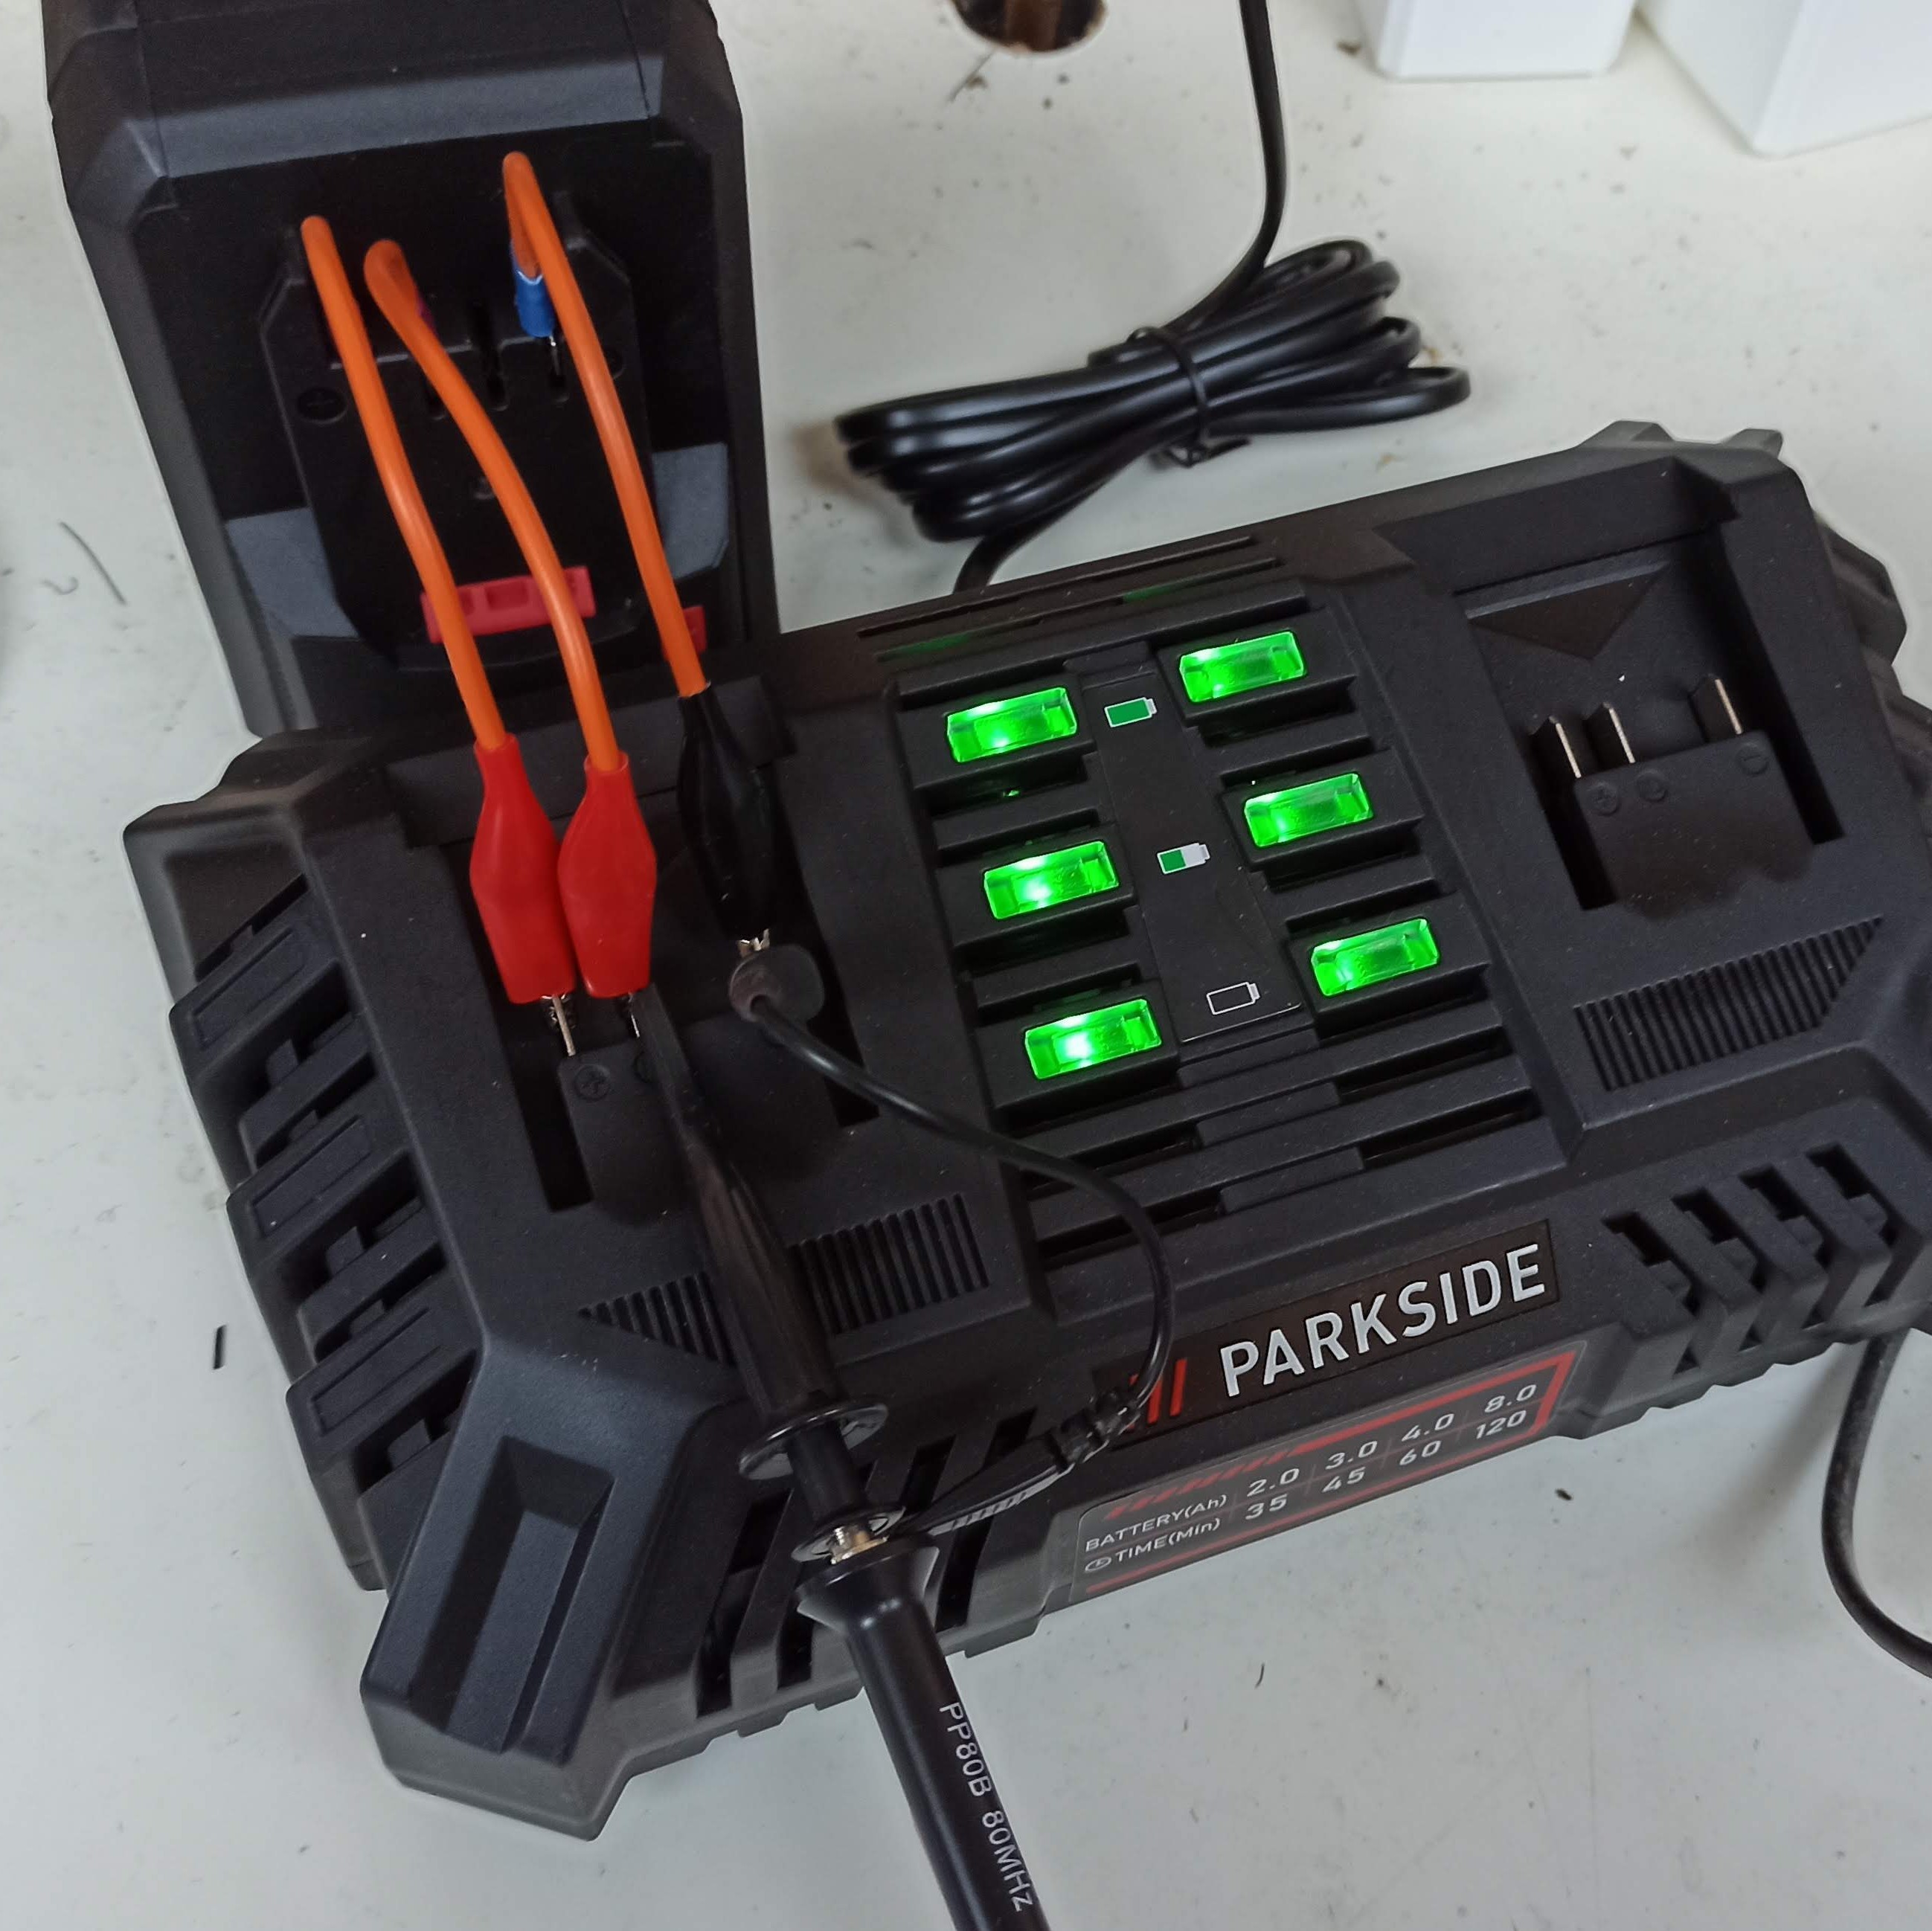 LIDL PARKSIDE Battery hacks